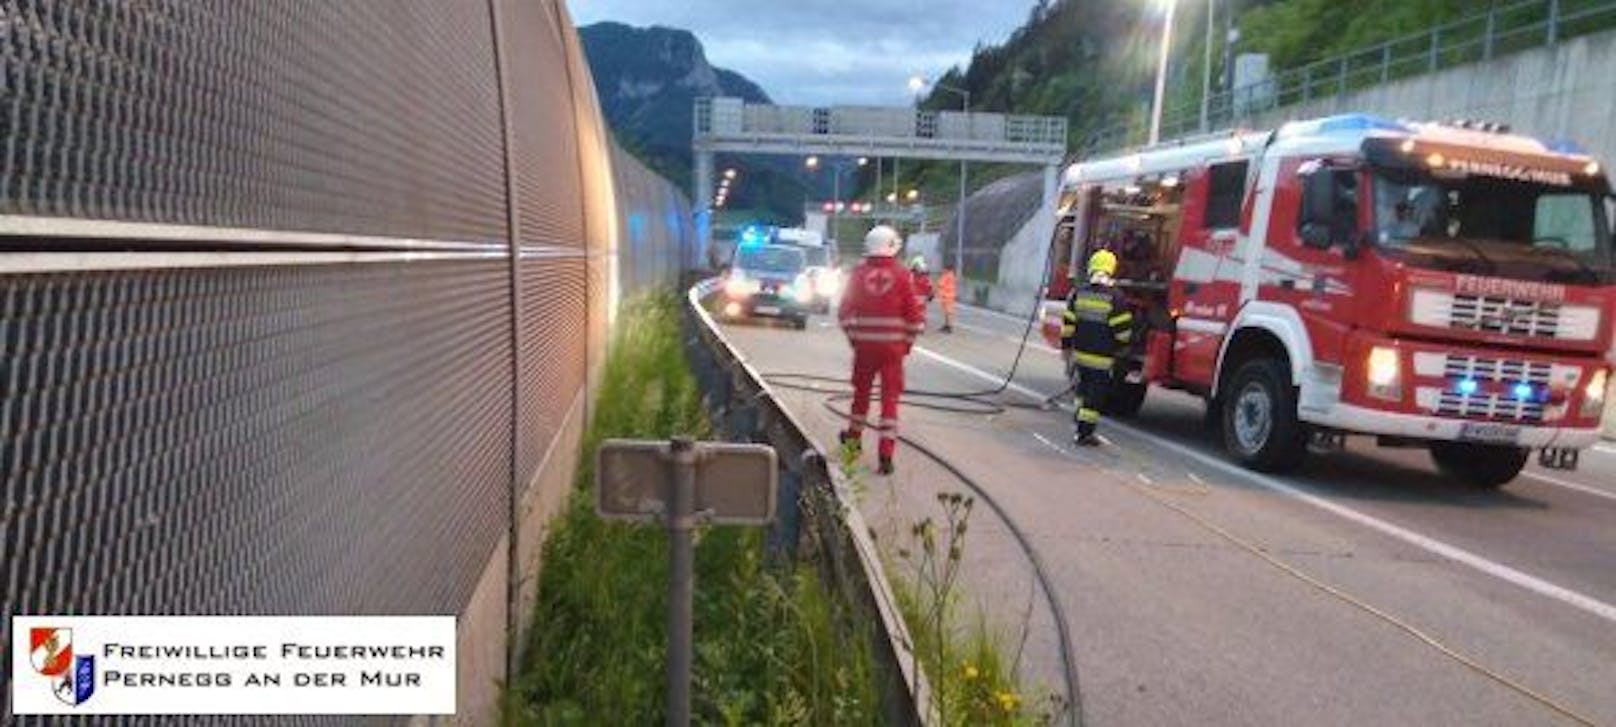 Bei der Kollision mit dem Tunnelportal bei Pernegg an der Mur am 28. Mai 2022 wurde ein 18-Jähriger getötet.